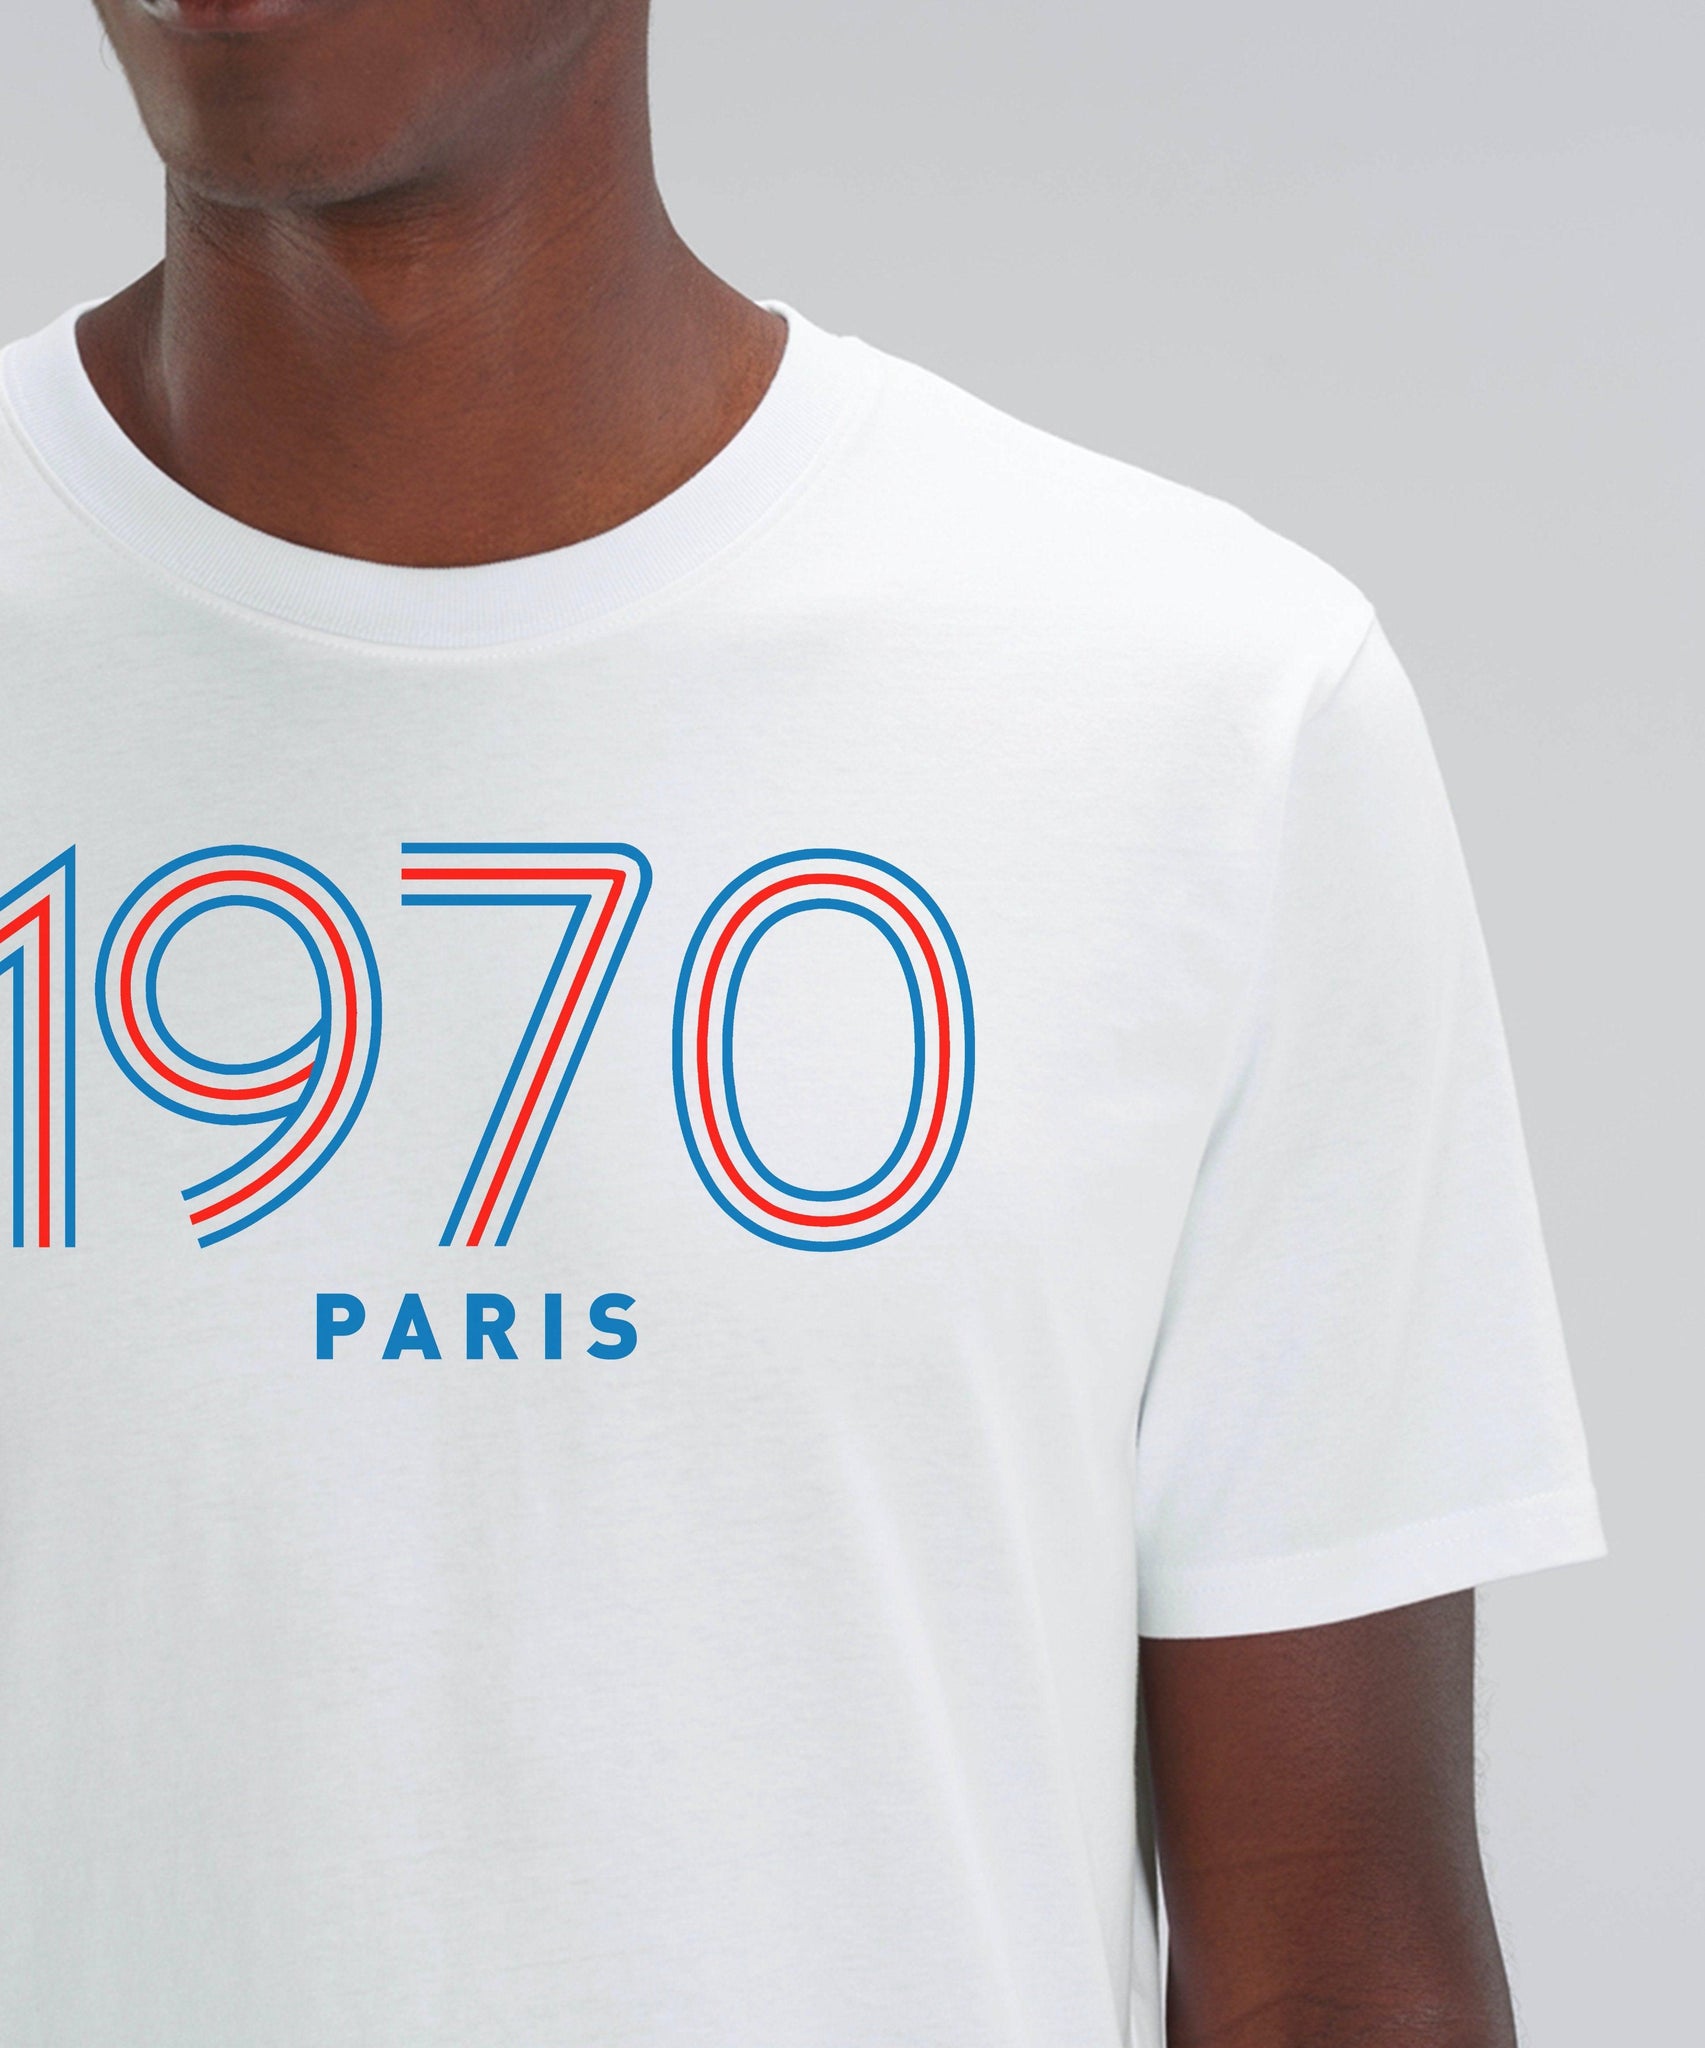 Tee Shirt Paris 1970